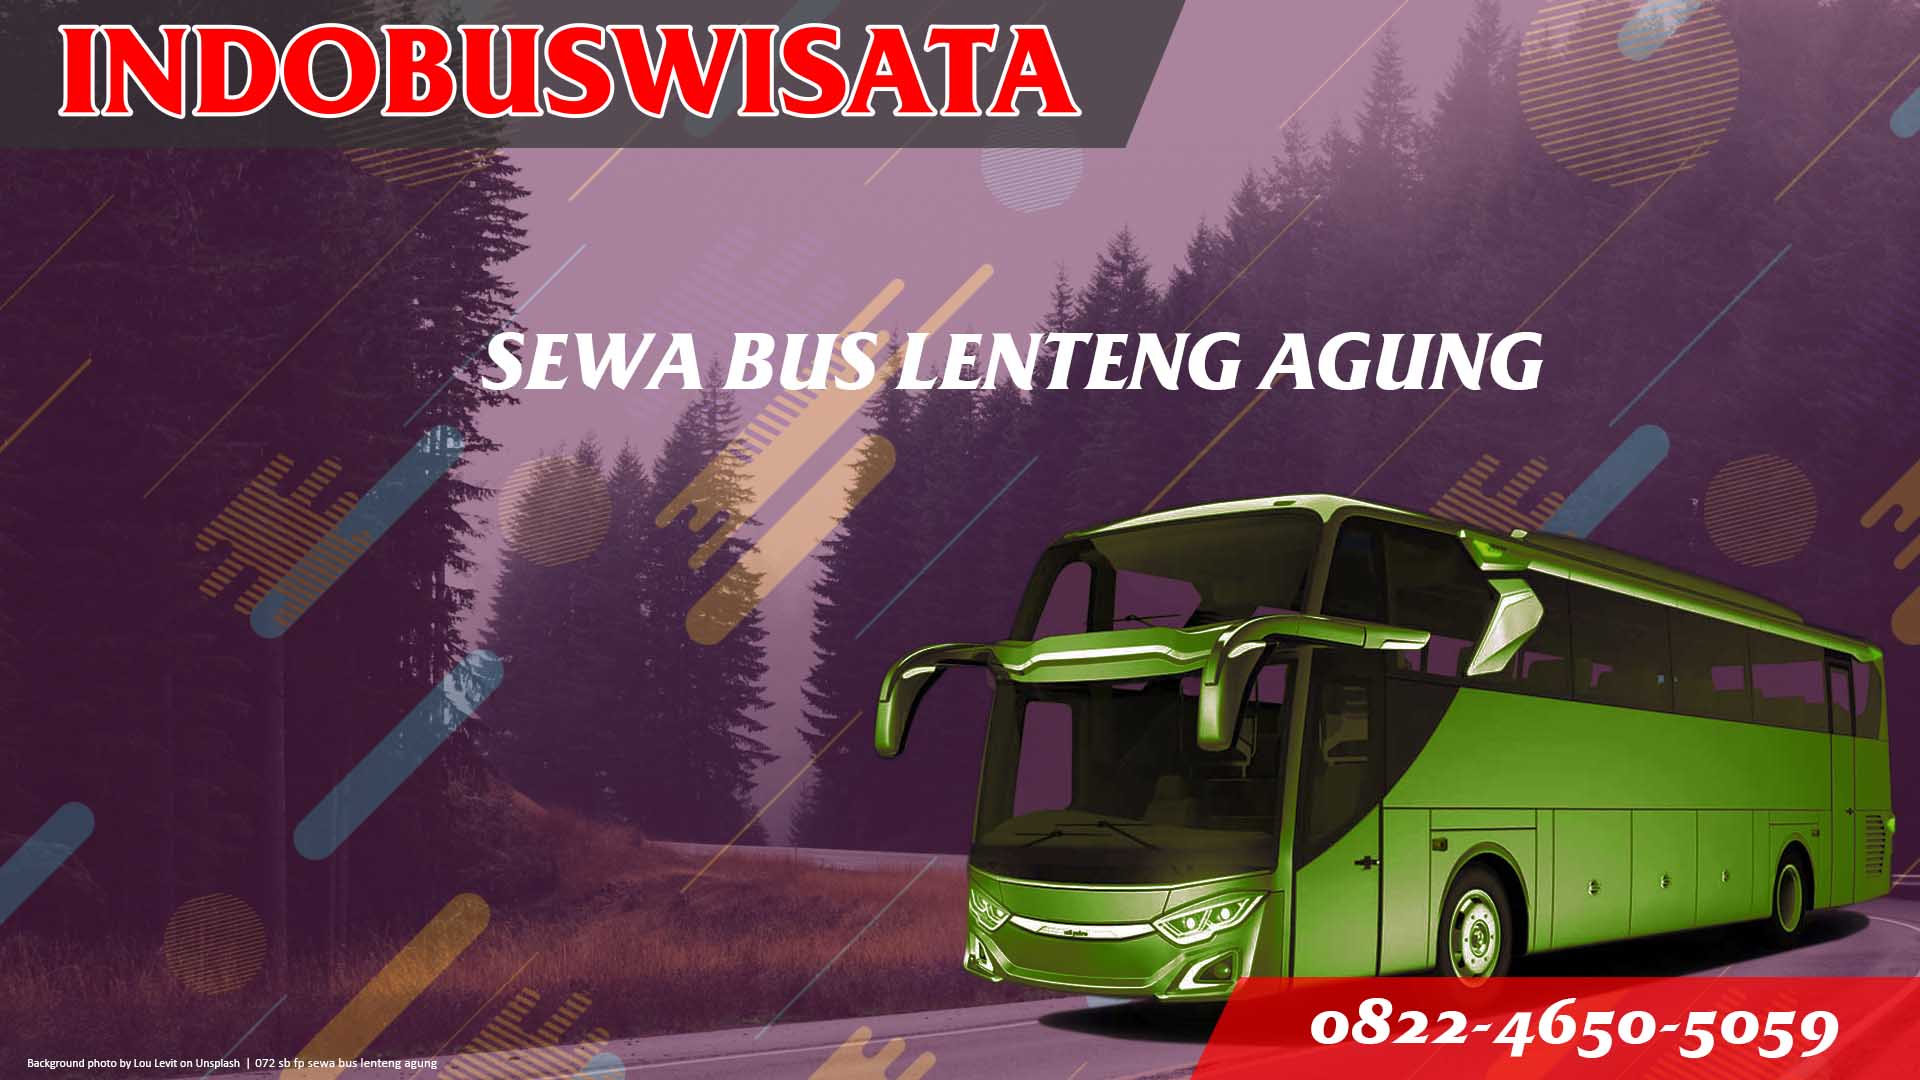 072 Sb Fp Sewa Bus Lenteng Agung Jb 3 Hdd Indobuswisata